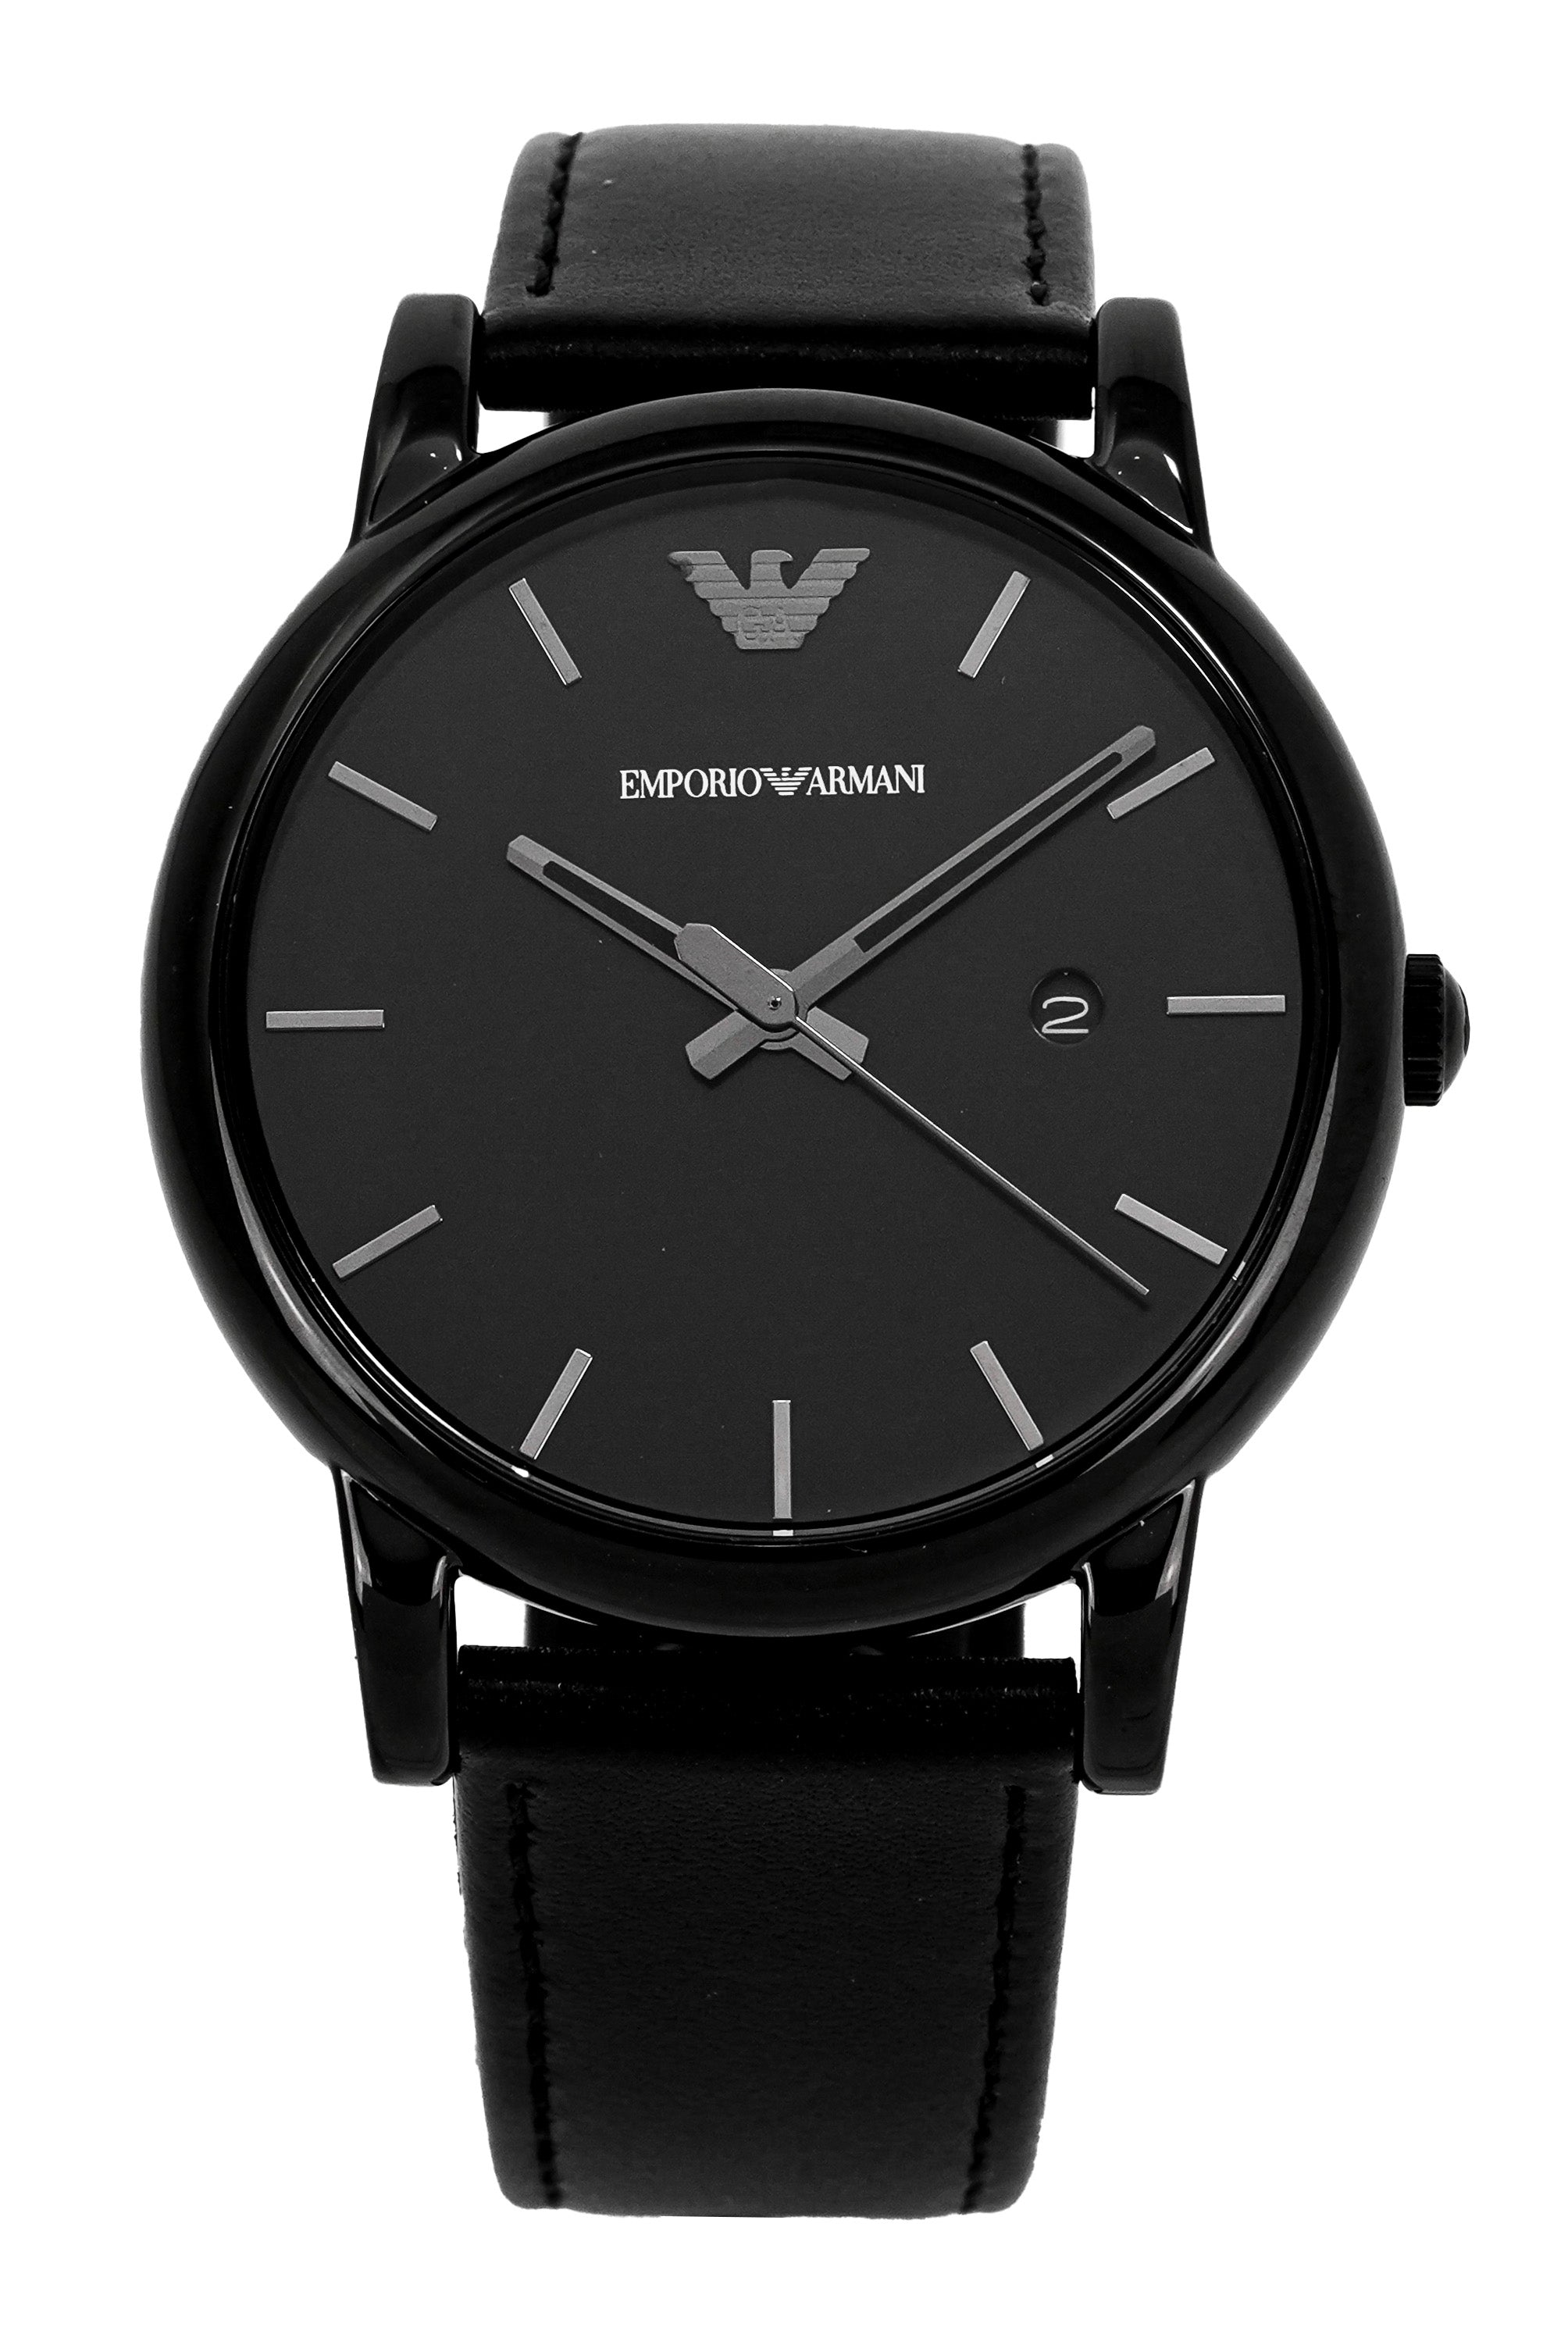 Emporio Armani Men's Sportivo Watch Black AR6102 – Watches & Crystals